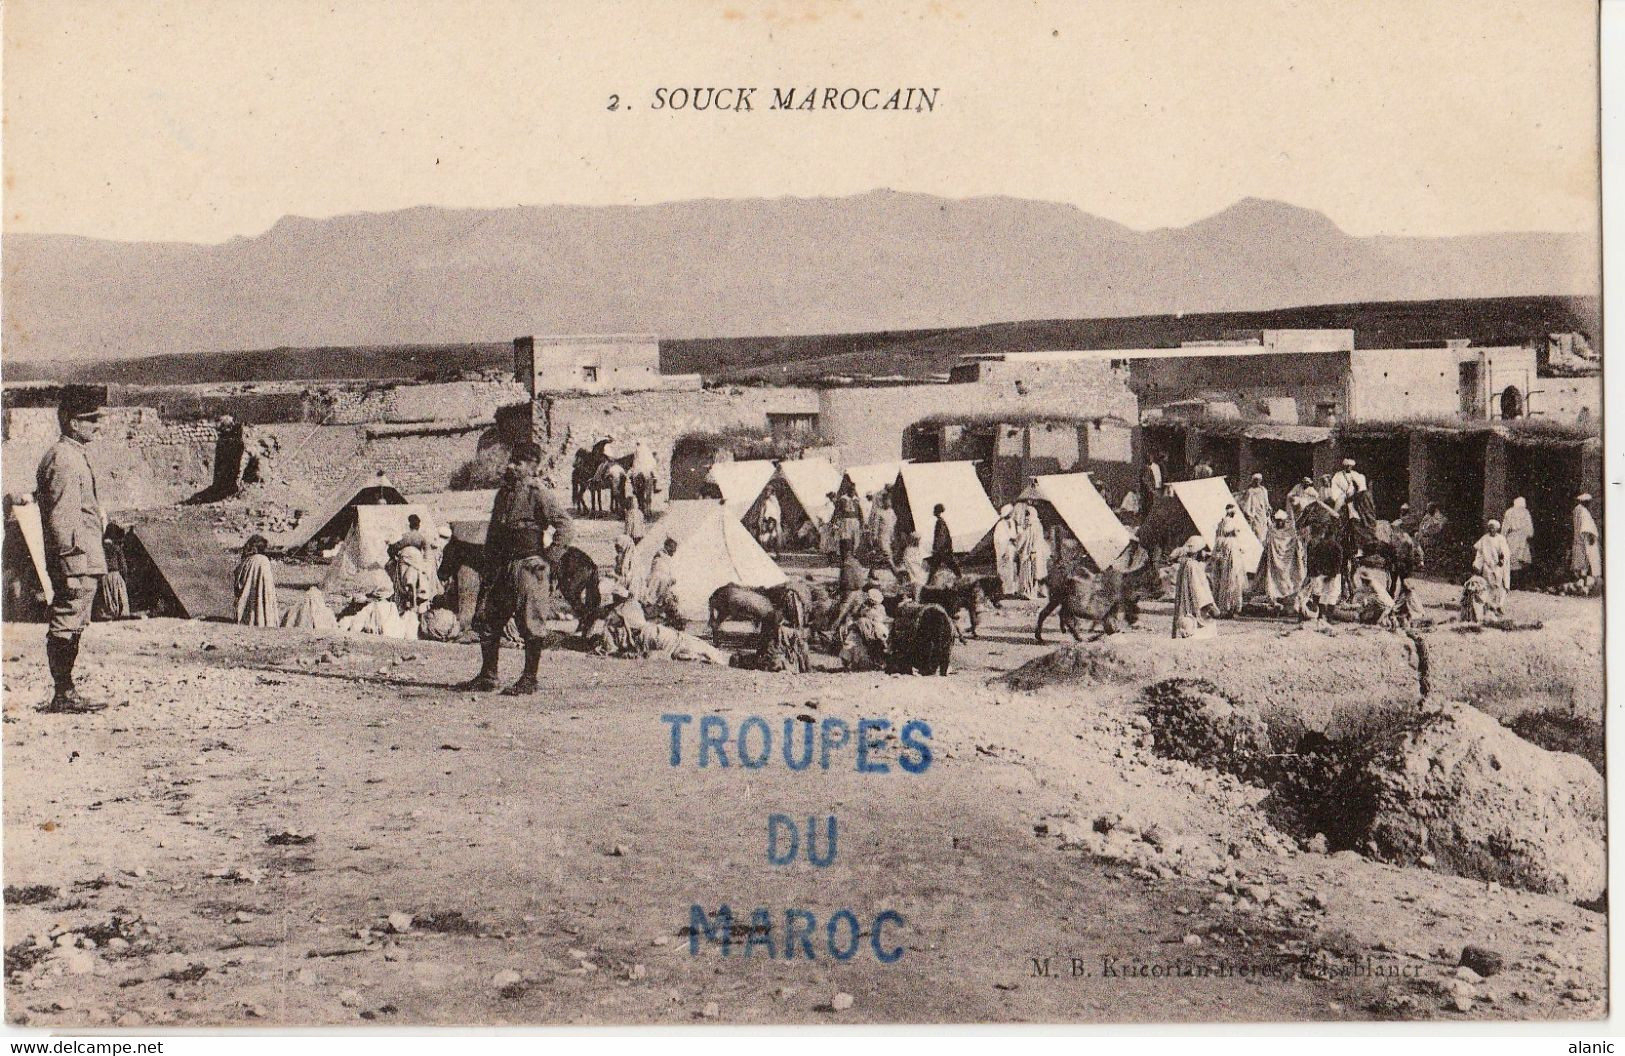 Militaria-TROUPE DU MAROC  Souck Marocain. A Voyagé  18 Février 1916. F. M.  Animée, PEU CONNUE Pli En Bas à Droite - Altre Guerre